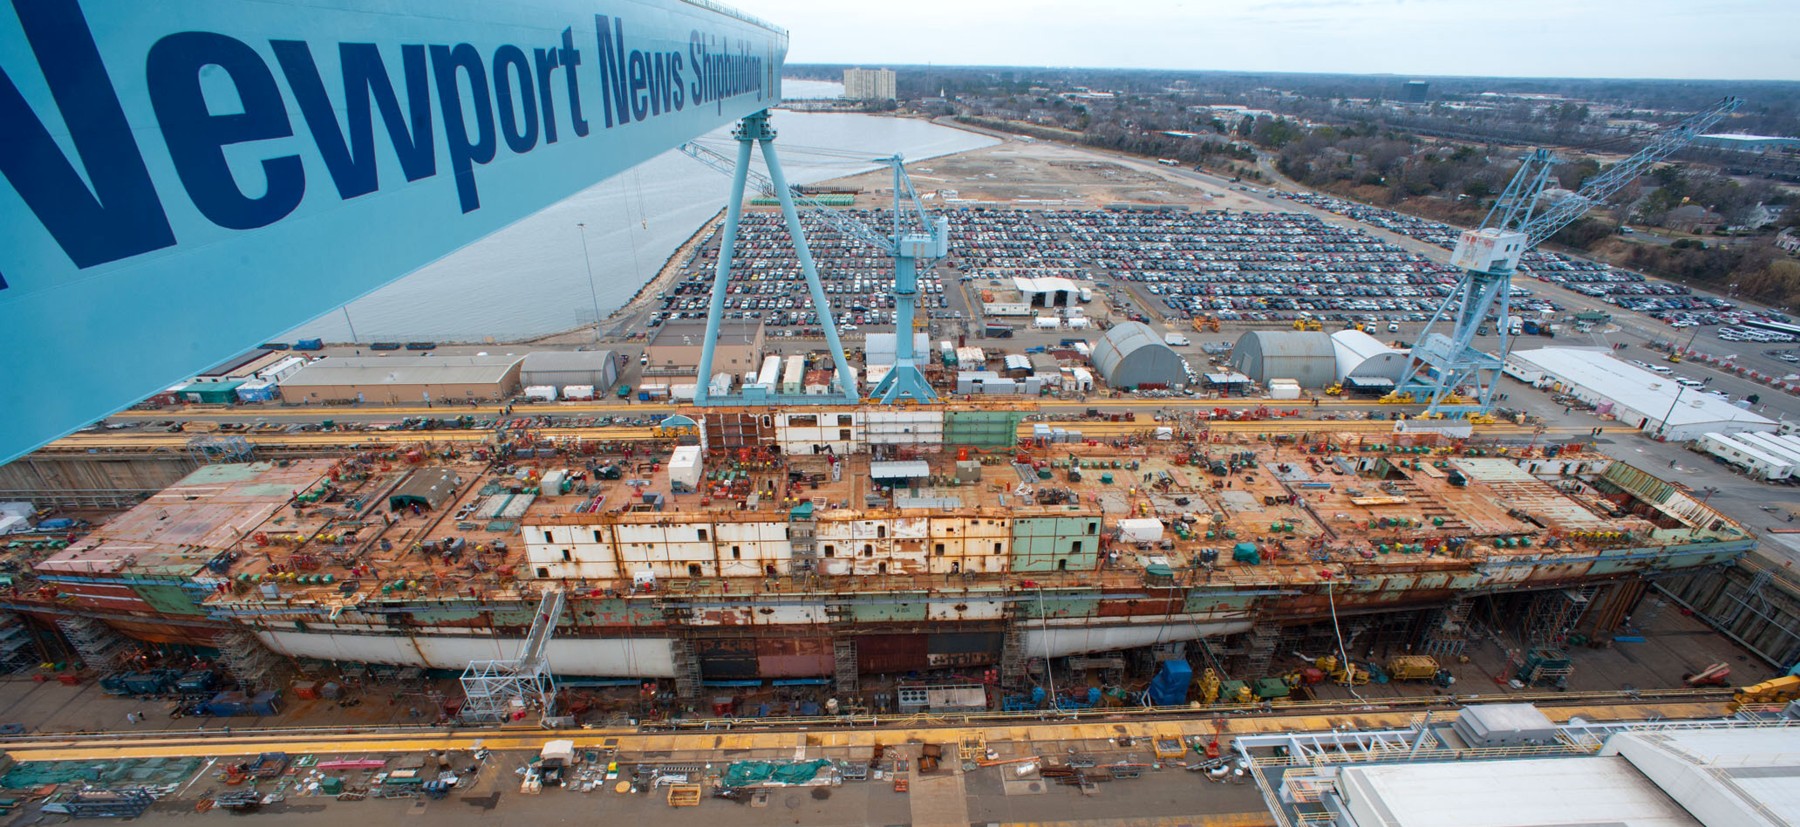 cvn-78 pcu uss gerald r. ford aircraft carrier us navy construction newport news shipbuilding 2012 05